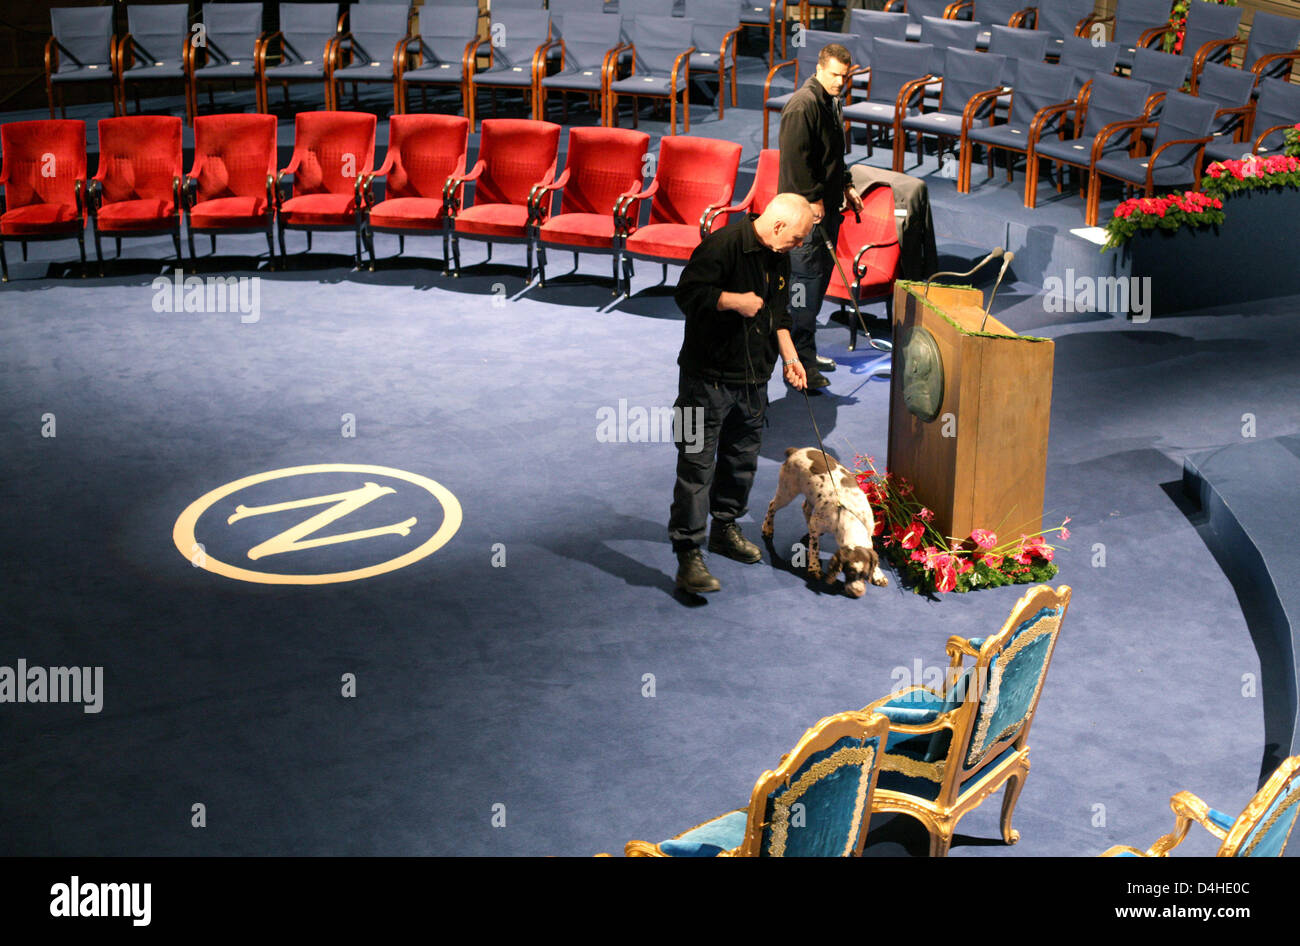 Polizisten suchen mit einem Spürhund die Konzertbühne Halle, wo am Nachmittag der Nobelpreisverleihung, in Stockholm, Schweden, 10. Dezember 2008 stattfinden wird. Mit 10 Millionen schwedischen Kronen (knapp 1 Million Euro) er ist dotiert. Foto: KAY NIETFELD Stockfoto